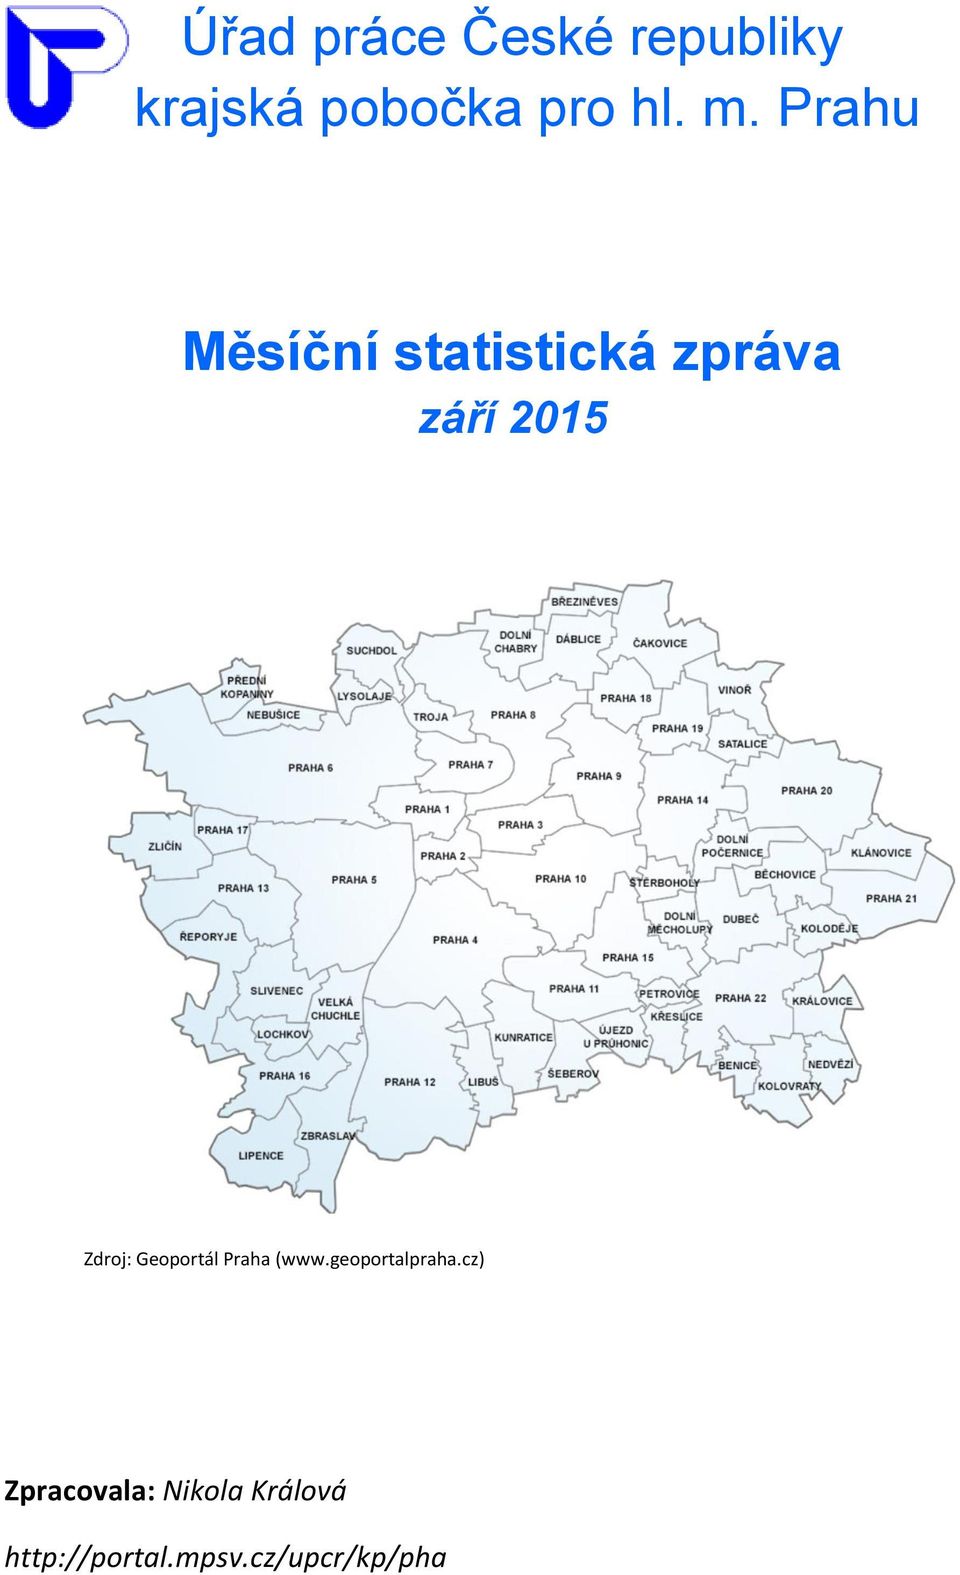 Zdroj: Geoportál Praha (www.geoportalpraha.